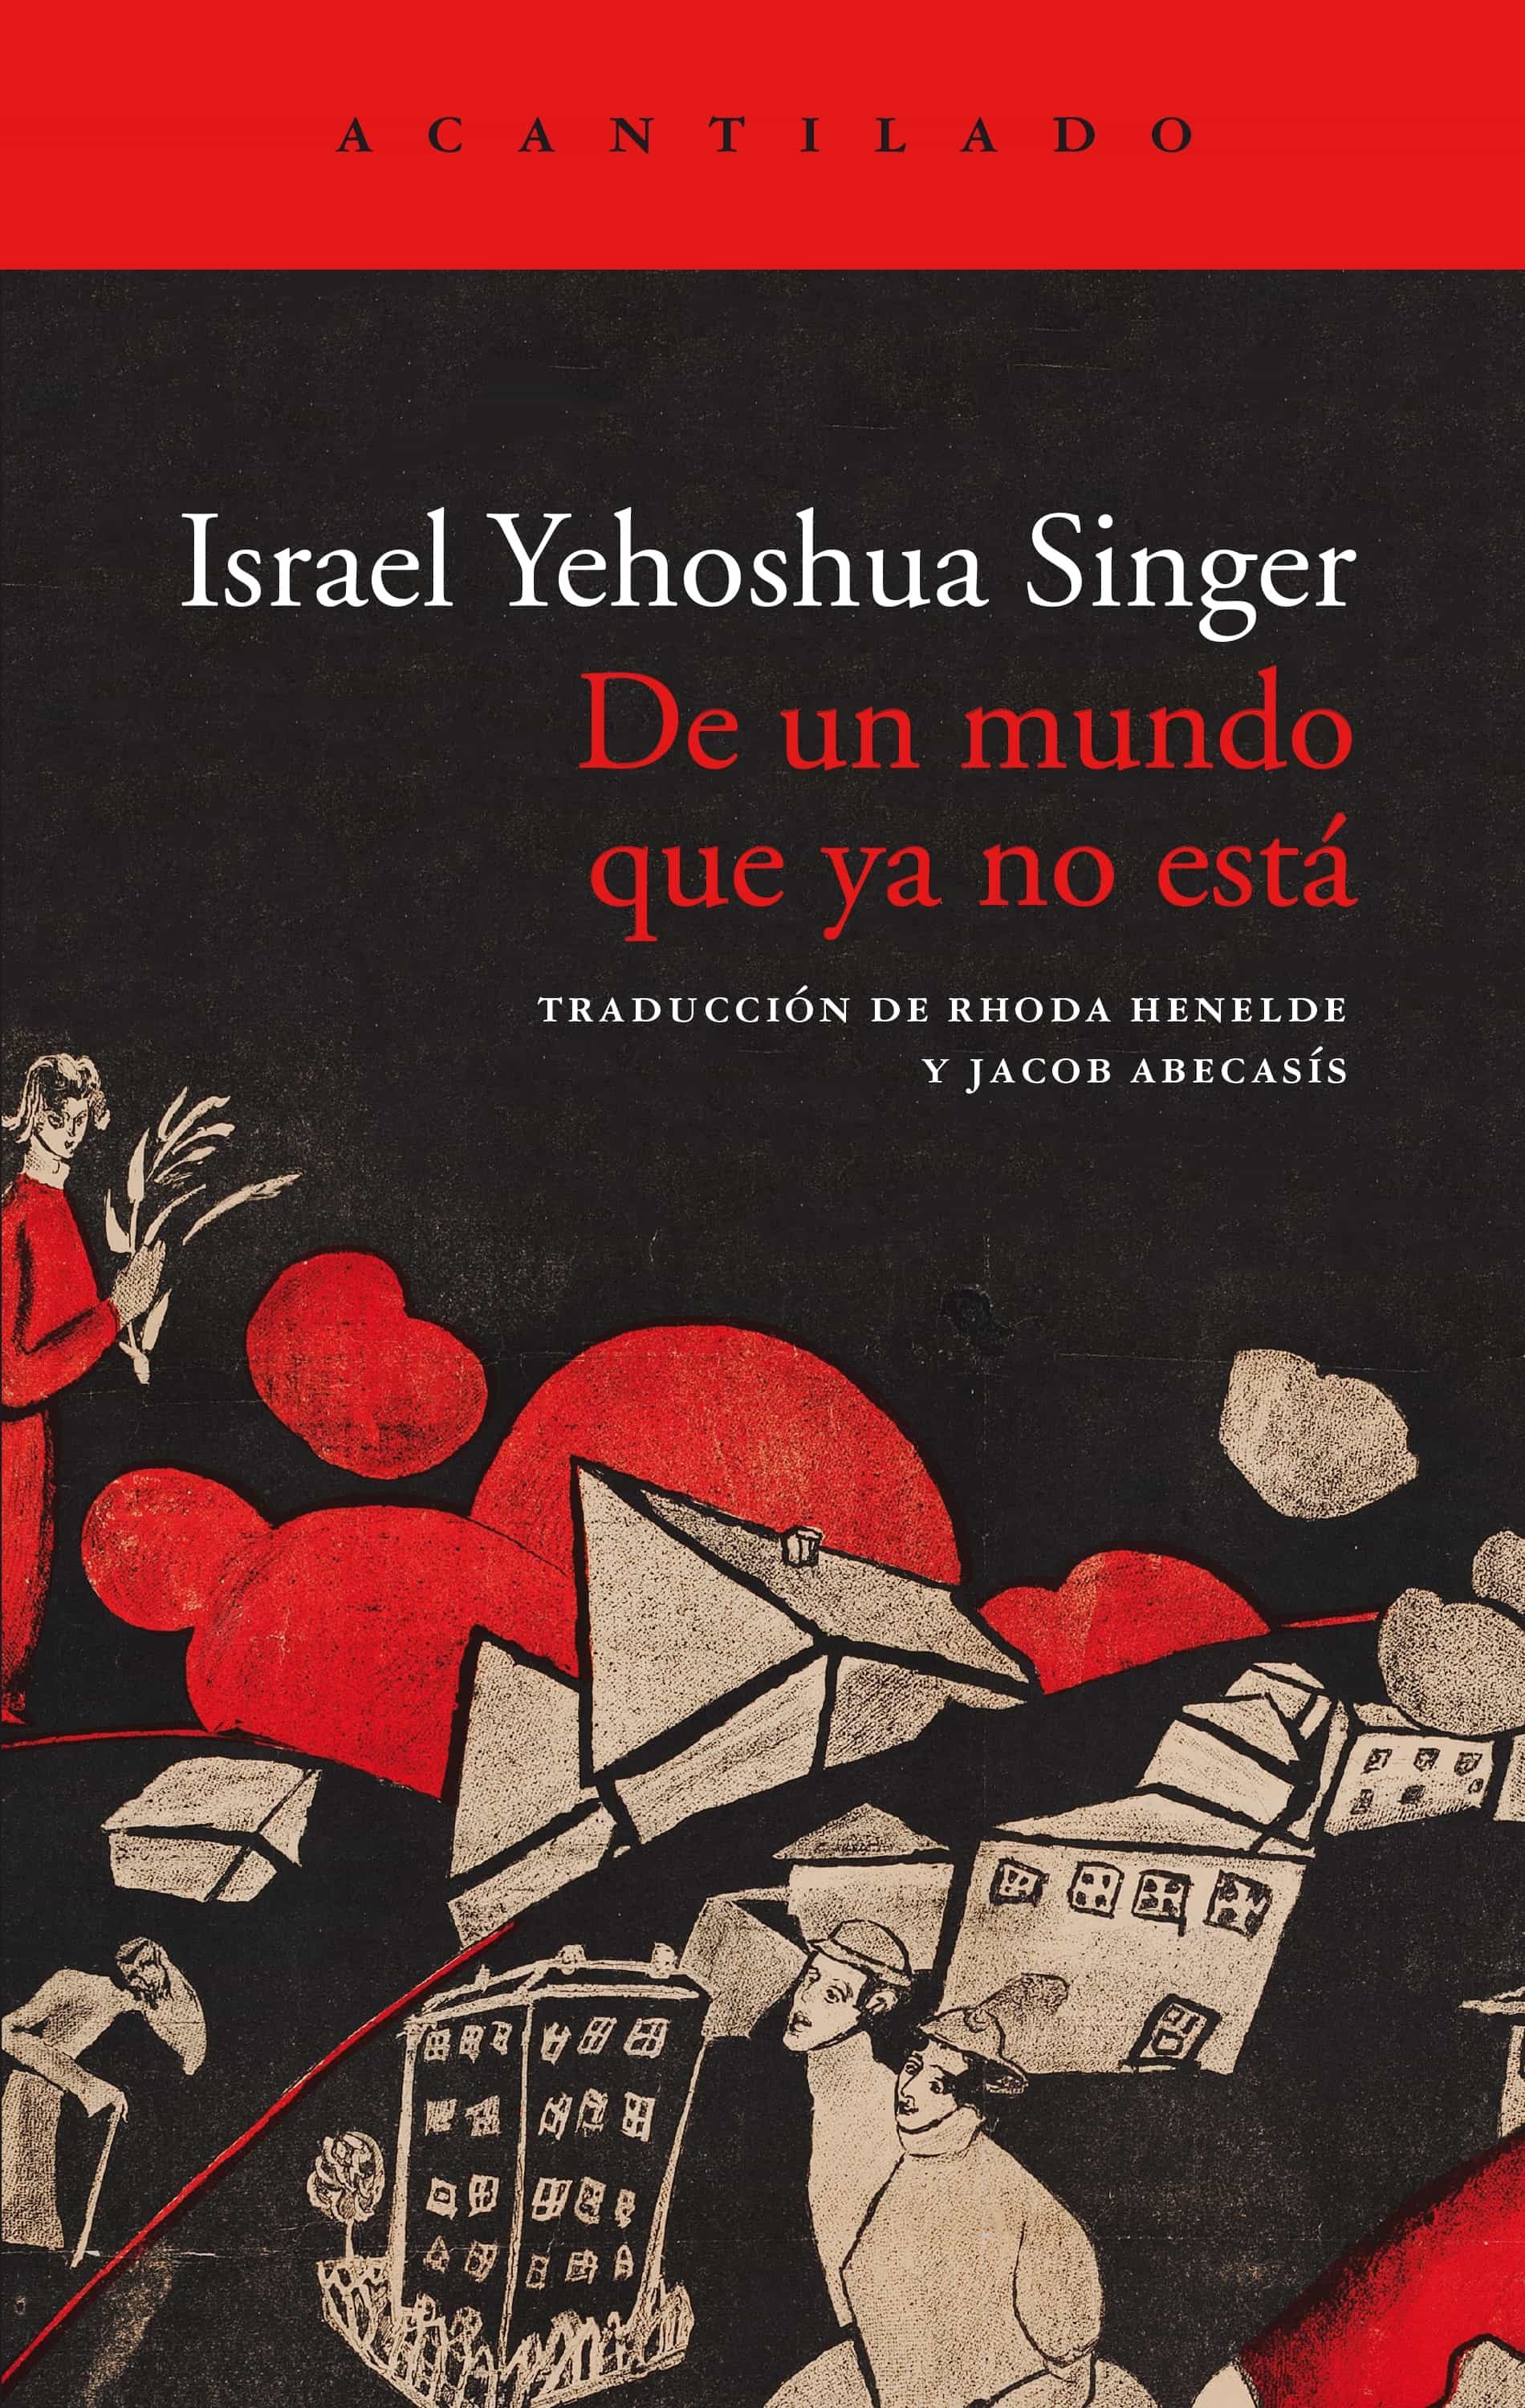 Portada del libro «De un mundo que ya no está», de Israel Yehoshua Singer